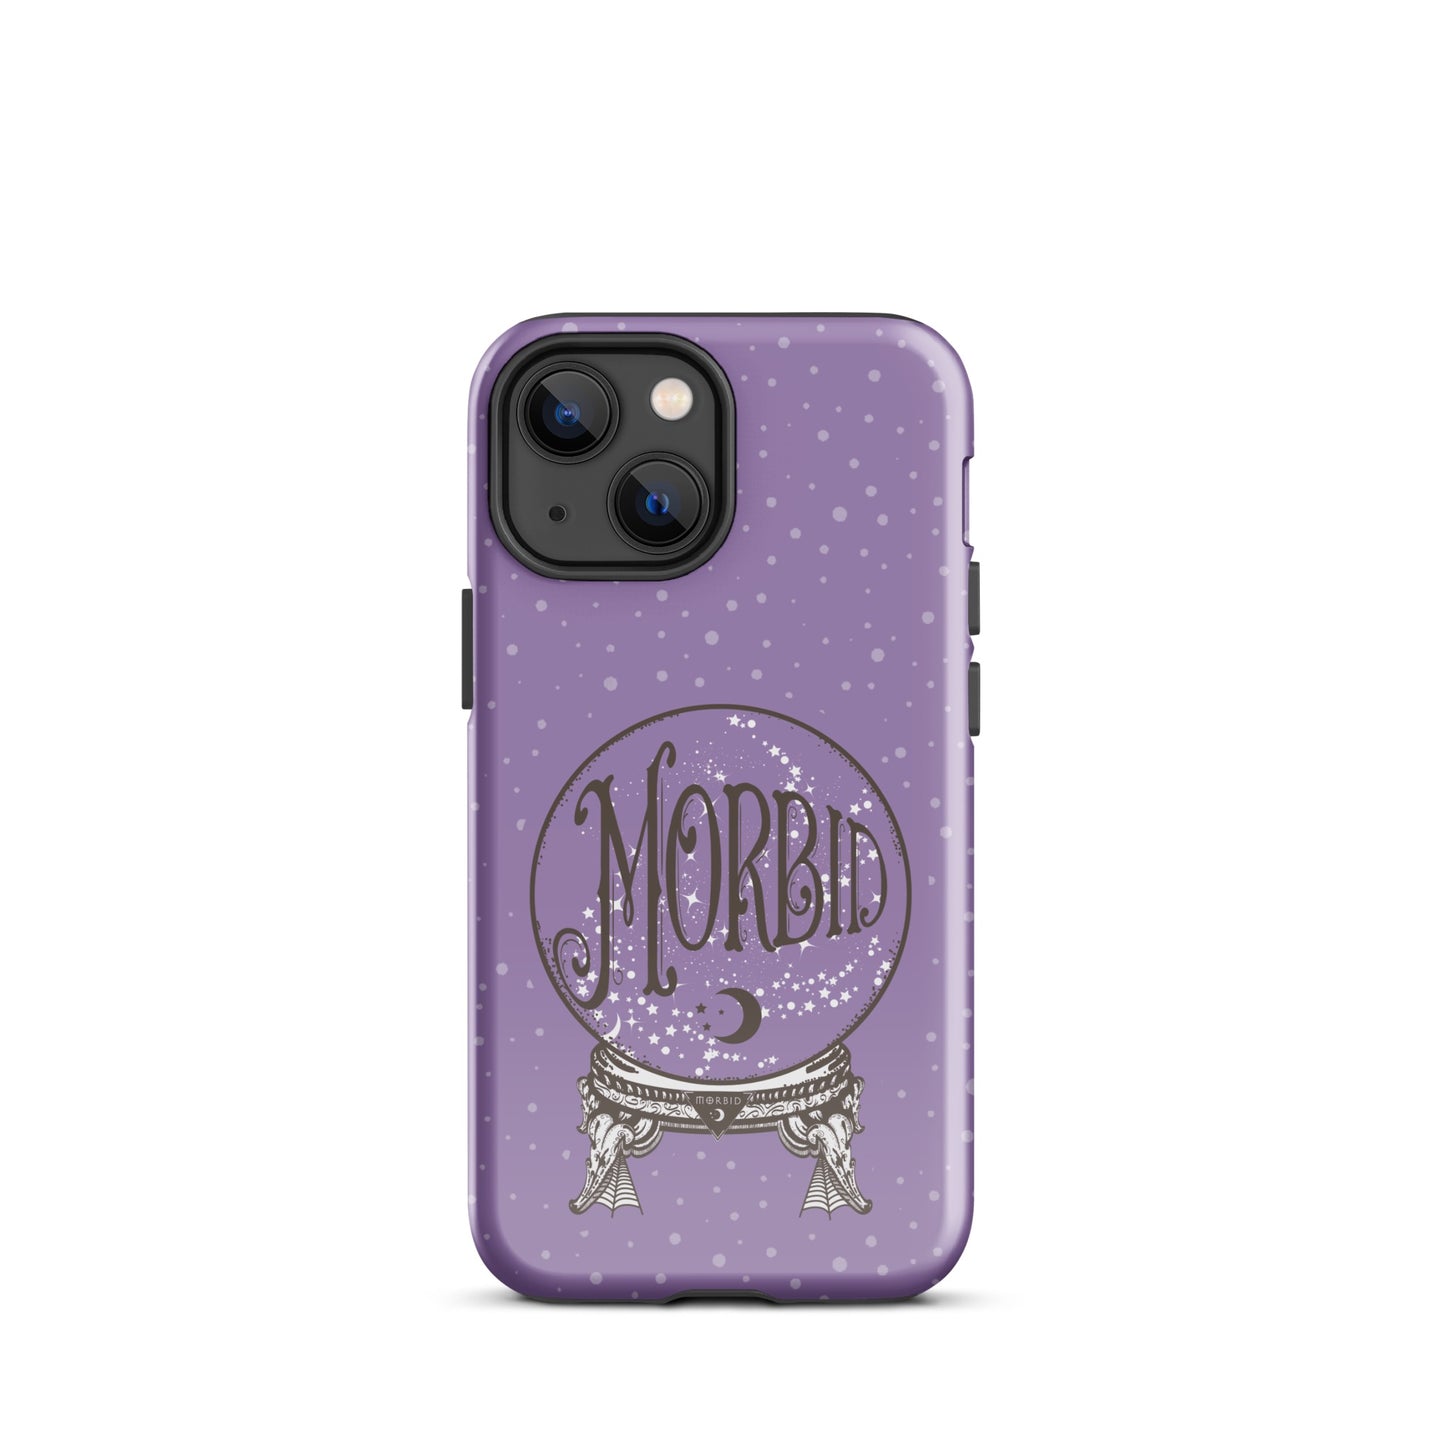 Morbid Crystal Ball iPhone Tough Case